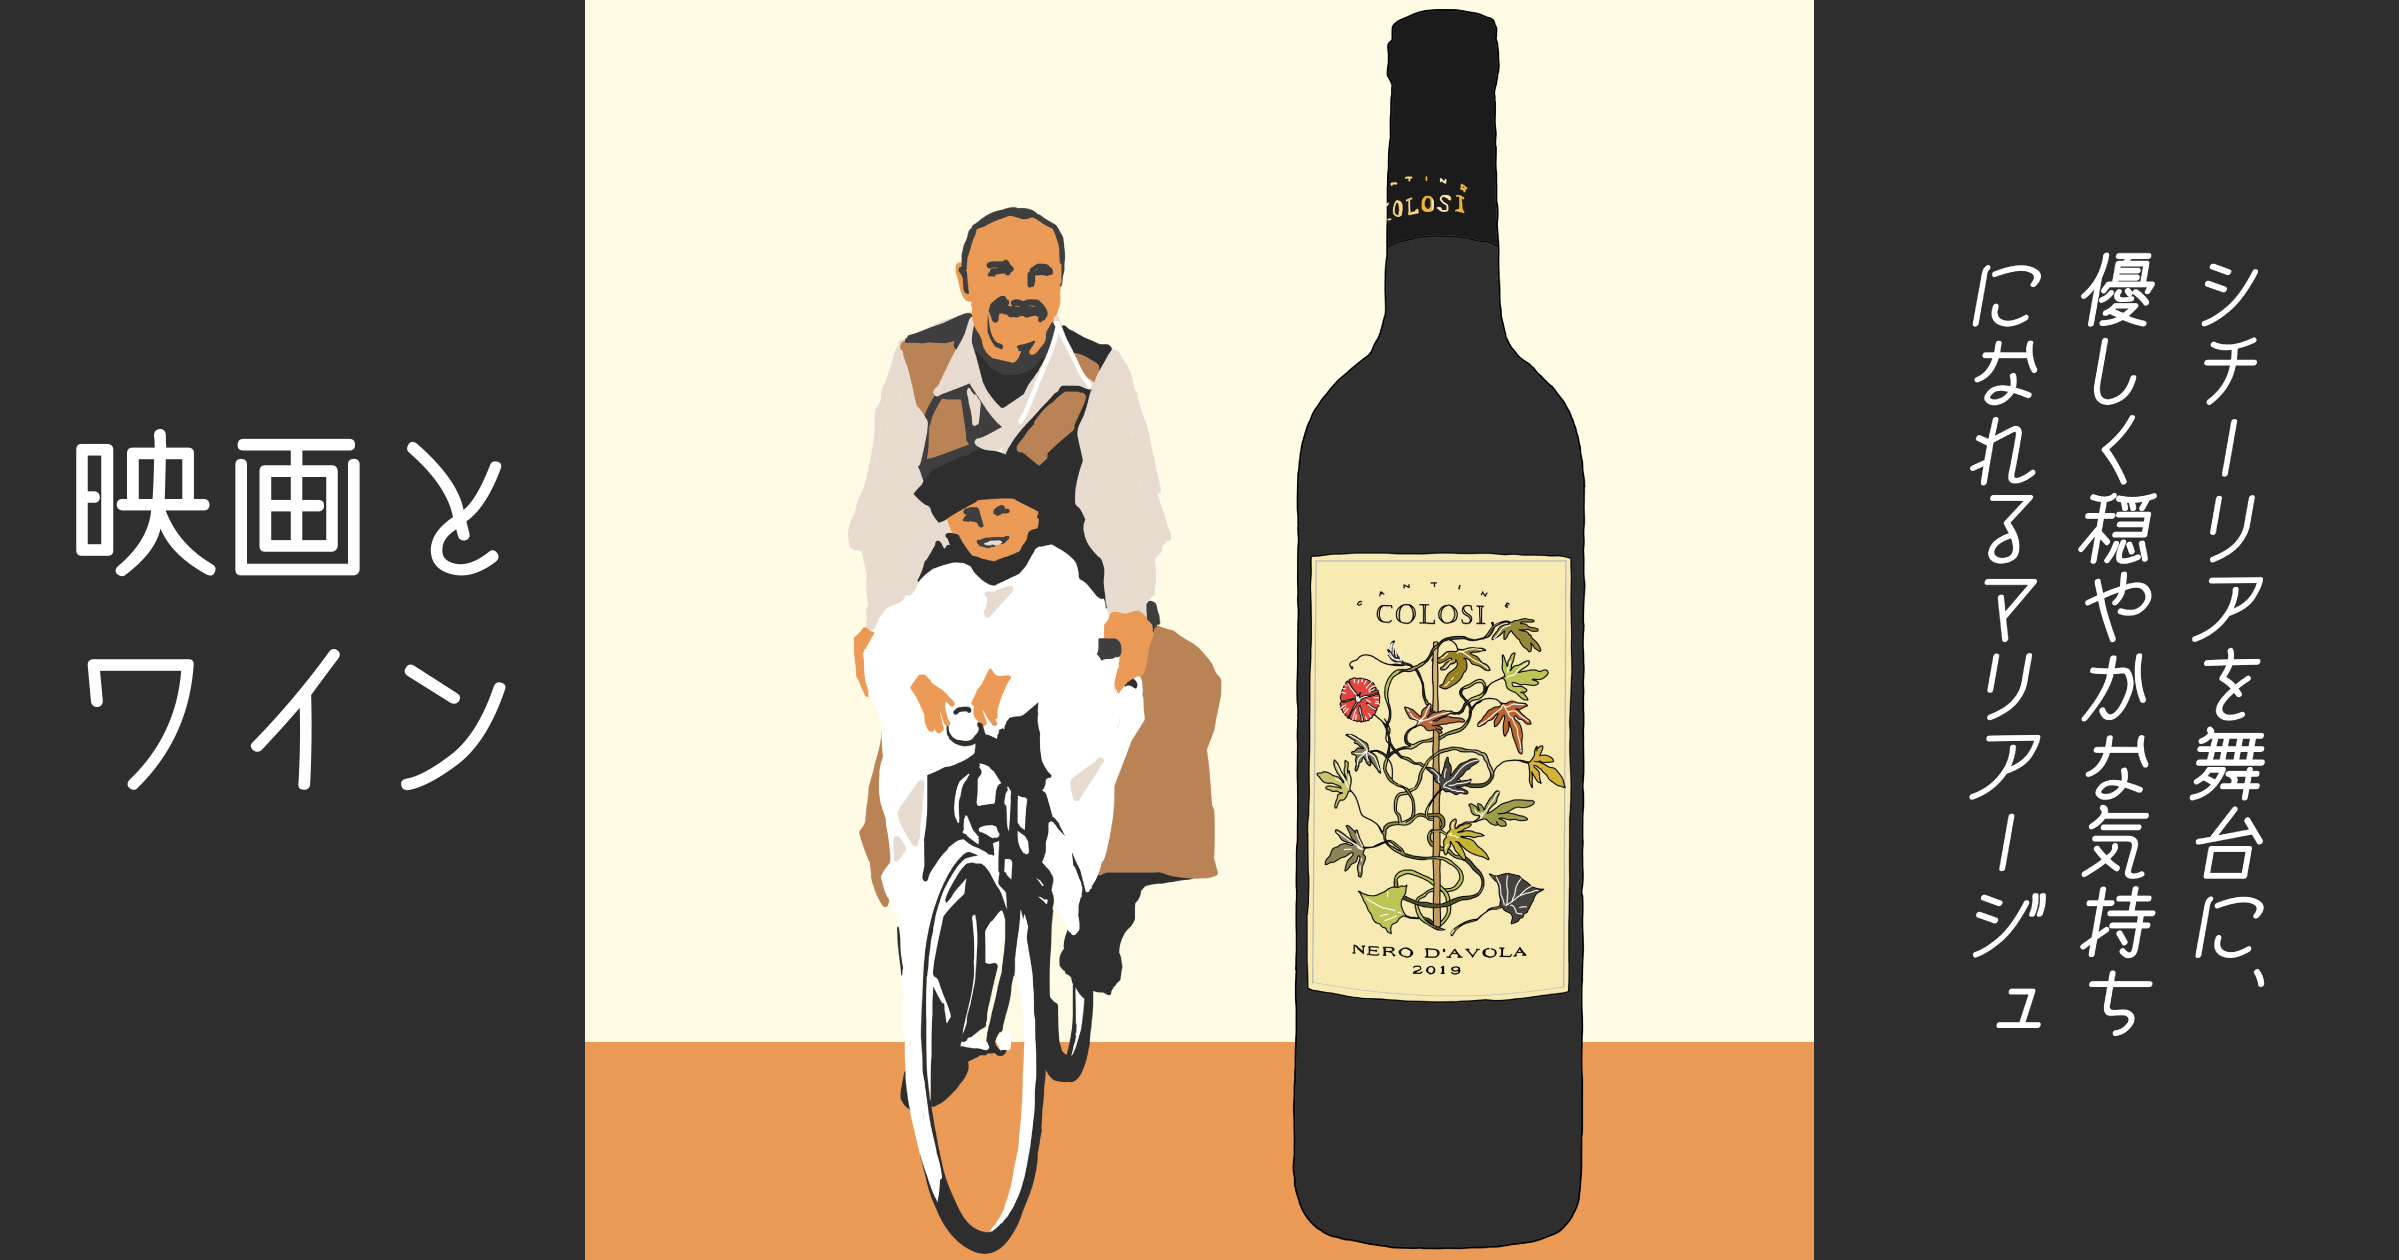 【シネマ×ワイン】『ニュー・シネマ・パラダイス』と、素朴で実直な味わいの赤ワイン カンティーネ・コローシ「ネロ・ダーヴォラ」